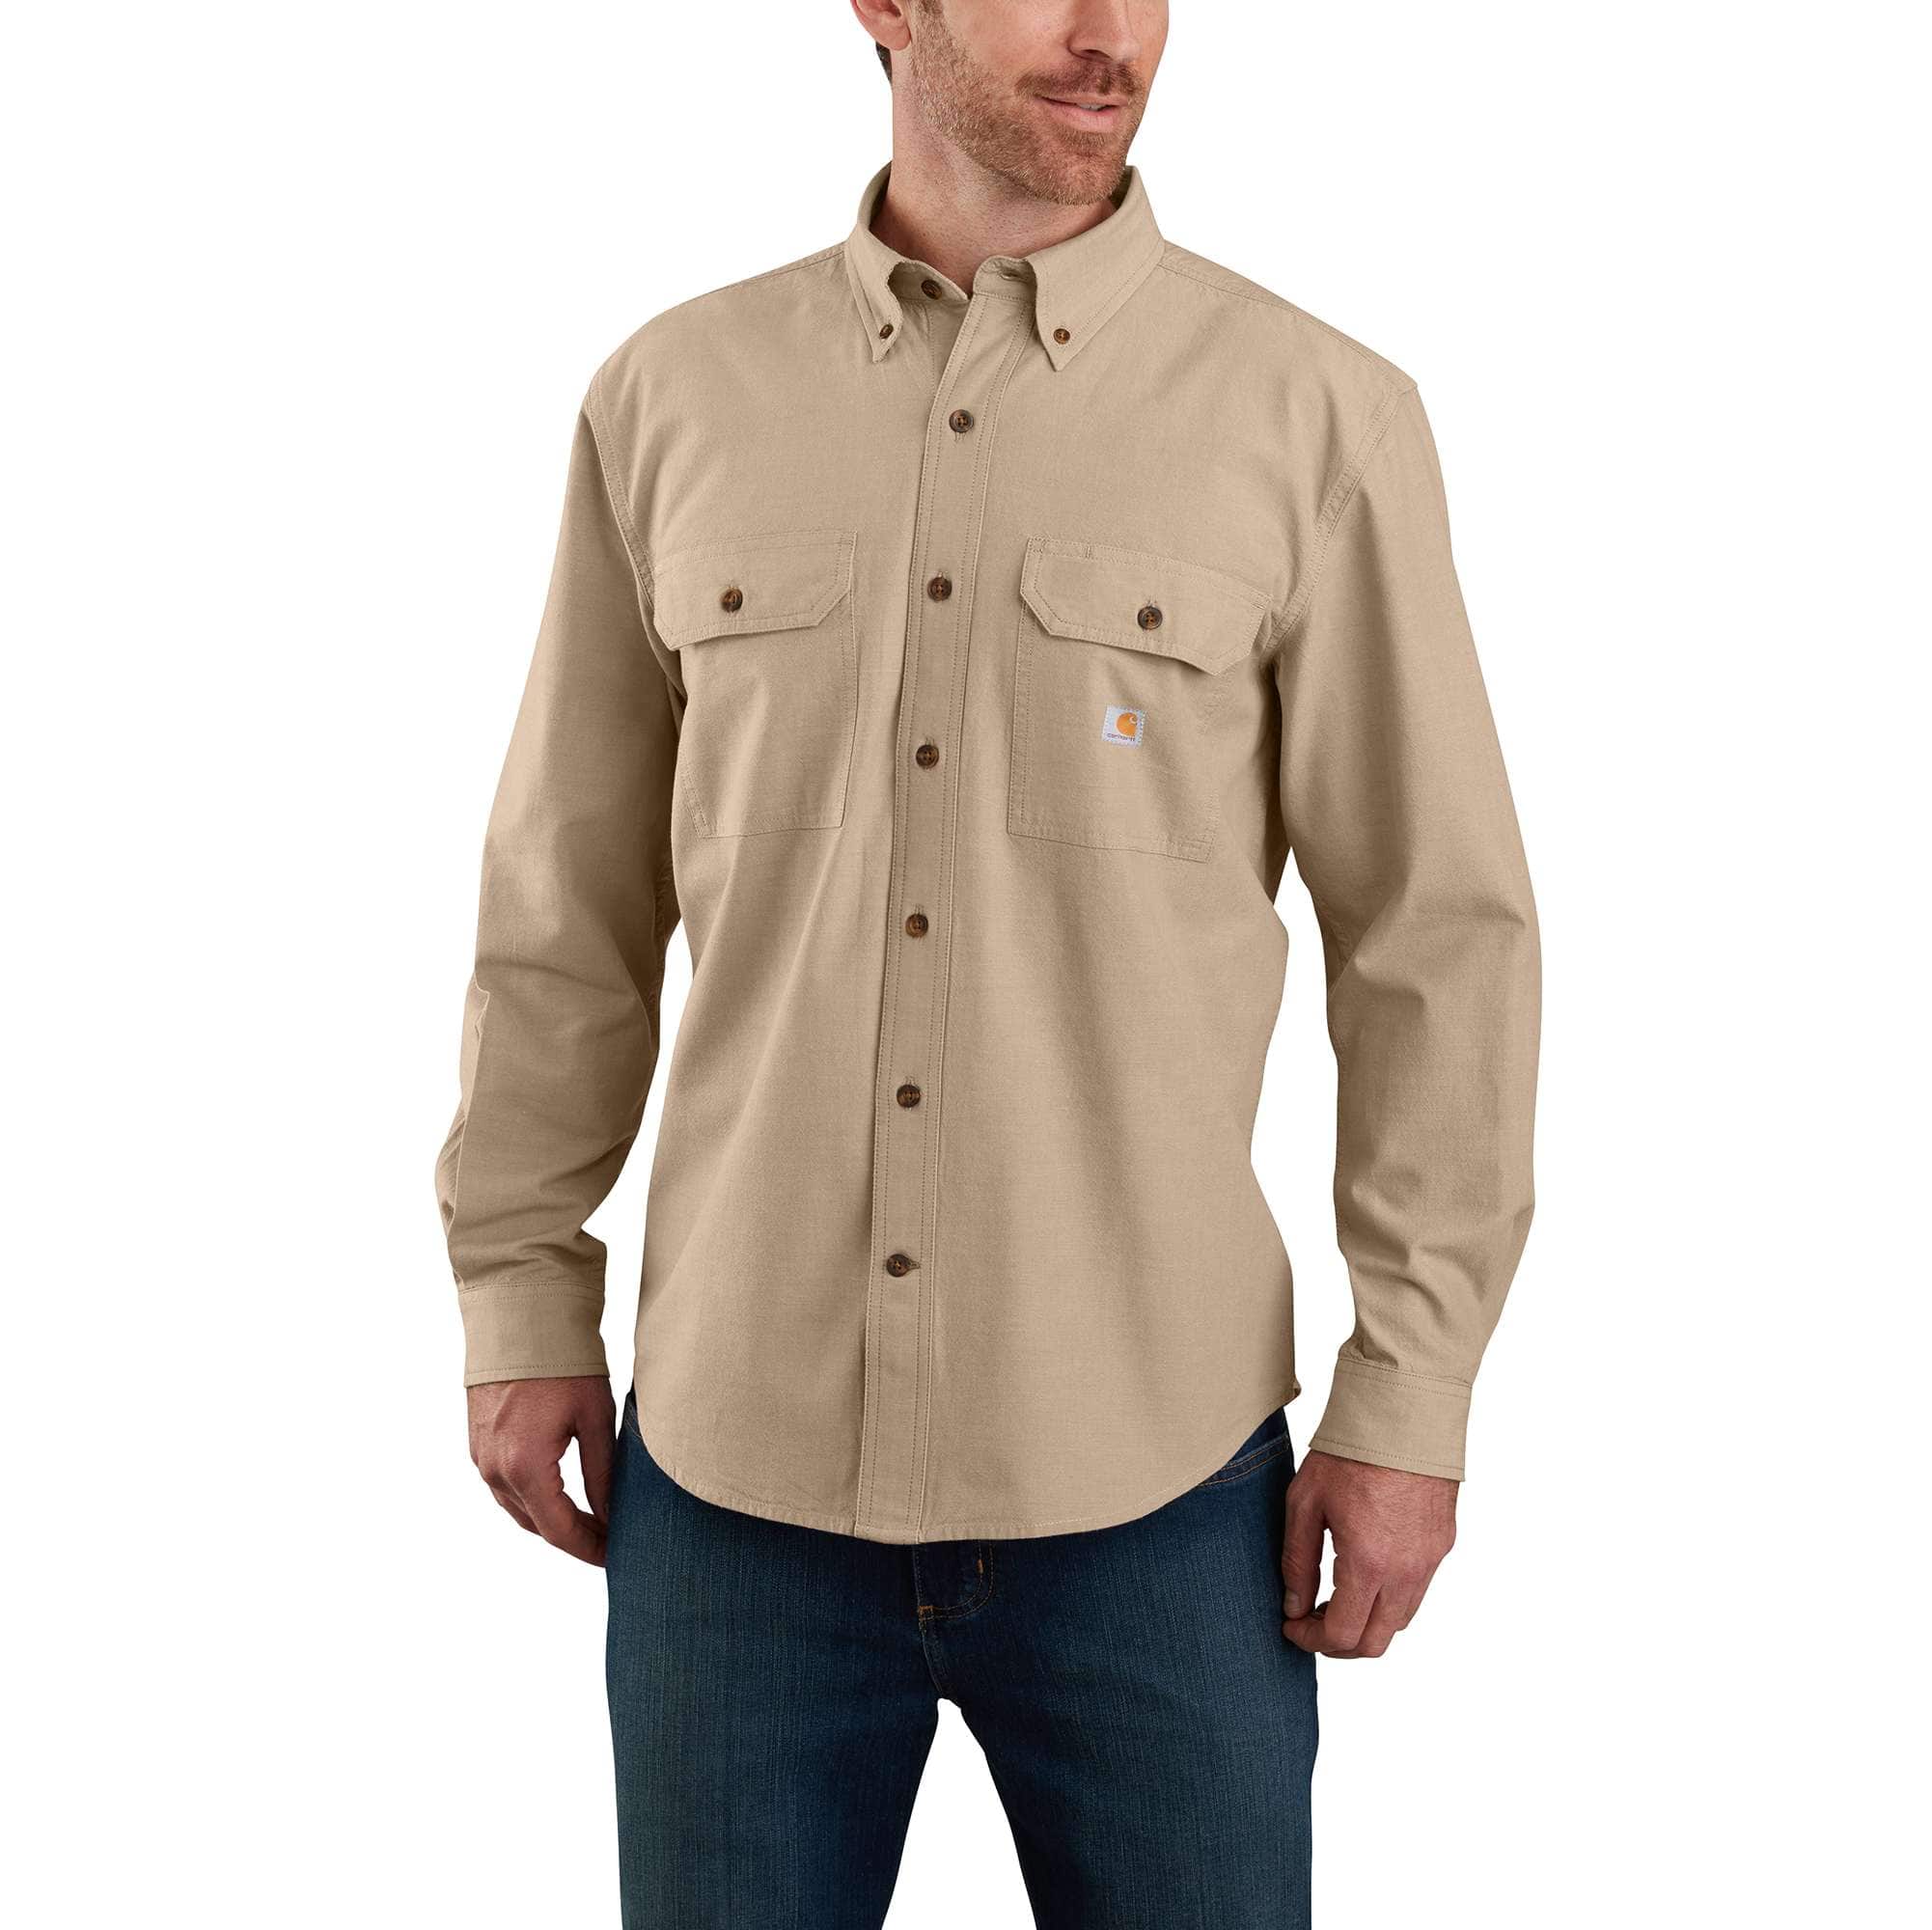 Men's Button Down Work Shirts | Carhartt